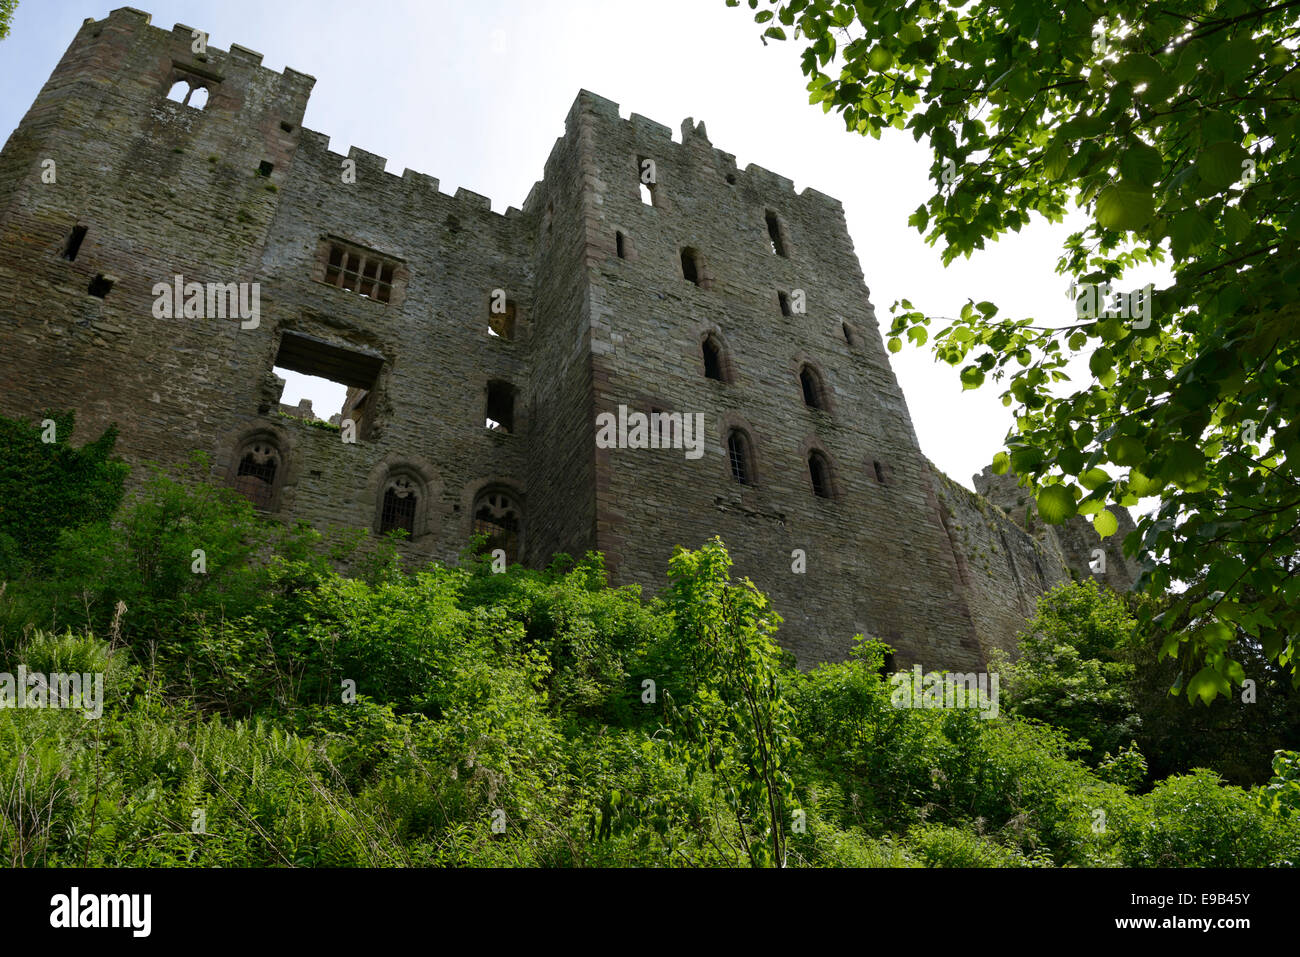 Ruines du 11e siècle, le château de Ludlow Ludlow, Shropshire, Angleterre, Royaume-Uni. L'Europe Banque D'Images